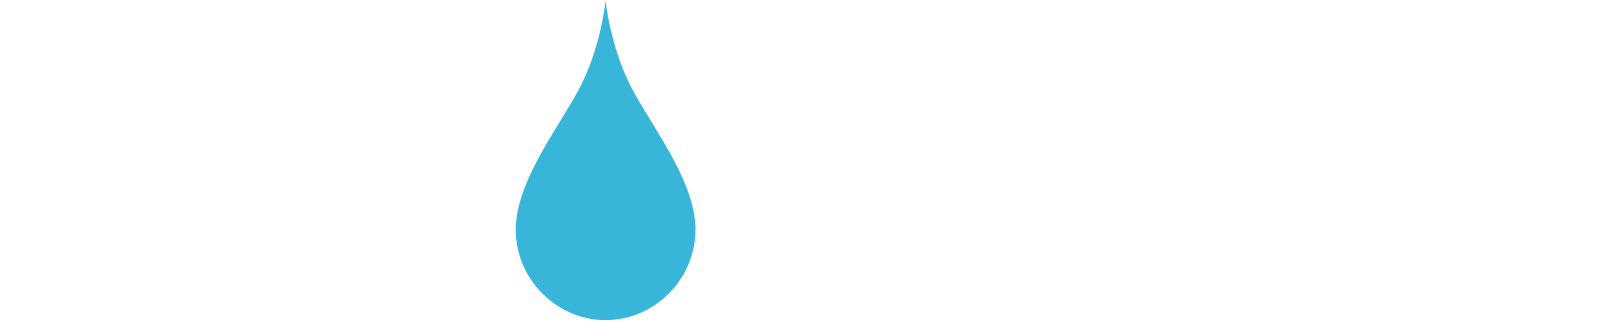 well-aware-logo